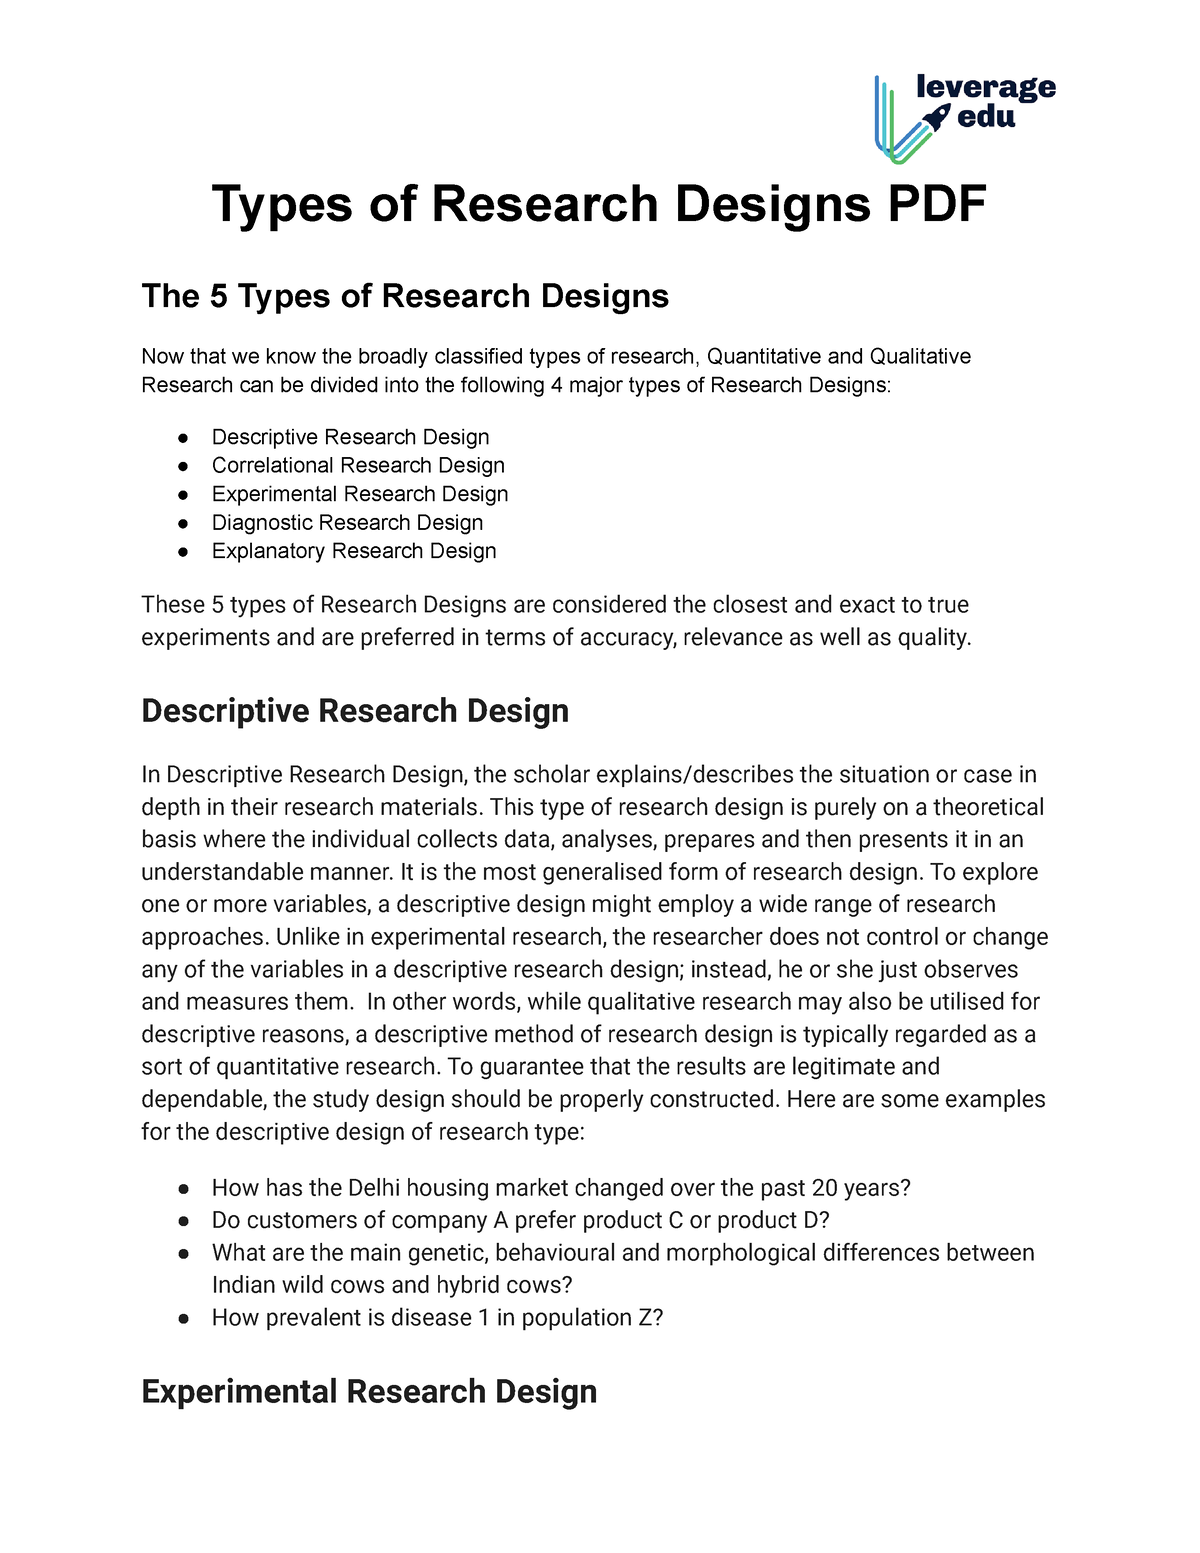 descriptive research design pdf 2020